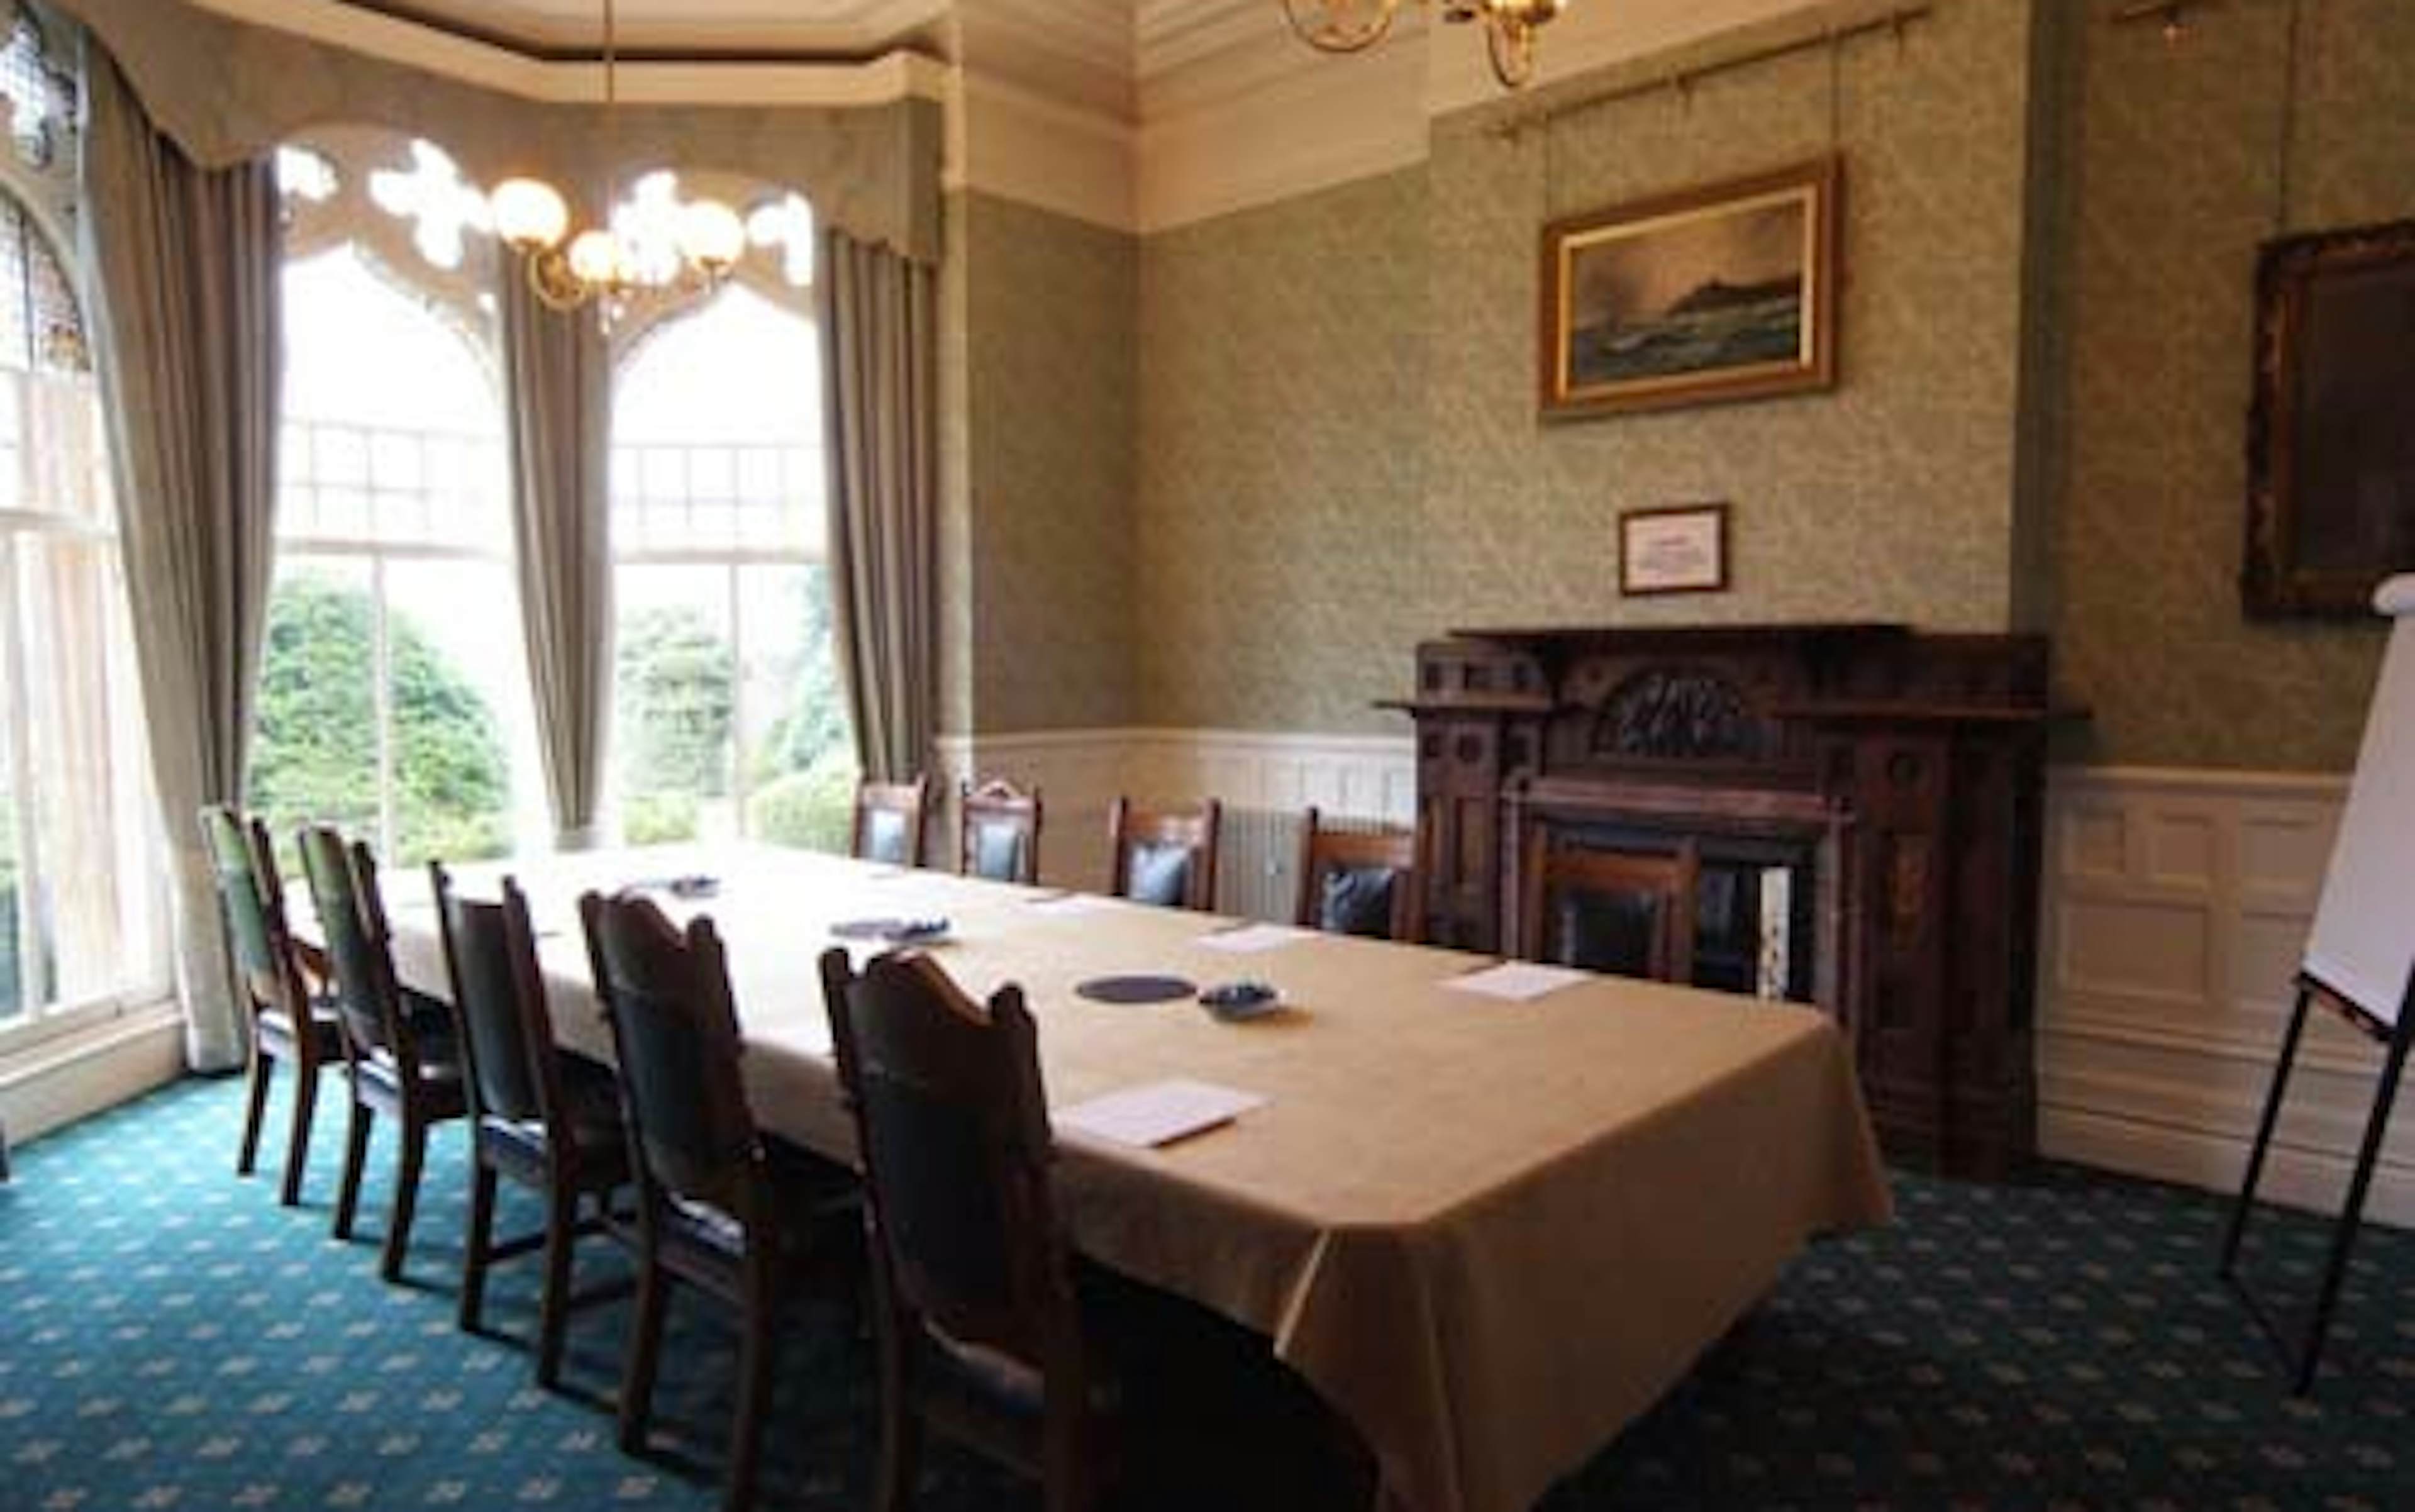 Highbury Hall - Breakfast Room Suite image 1